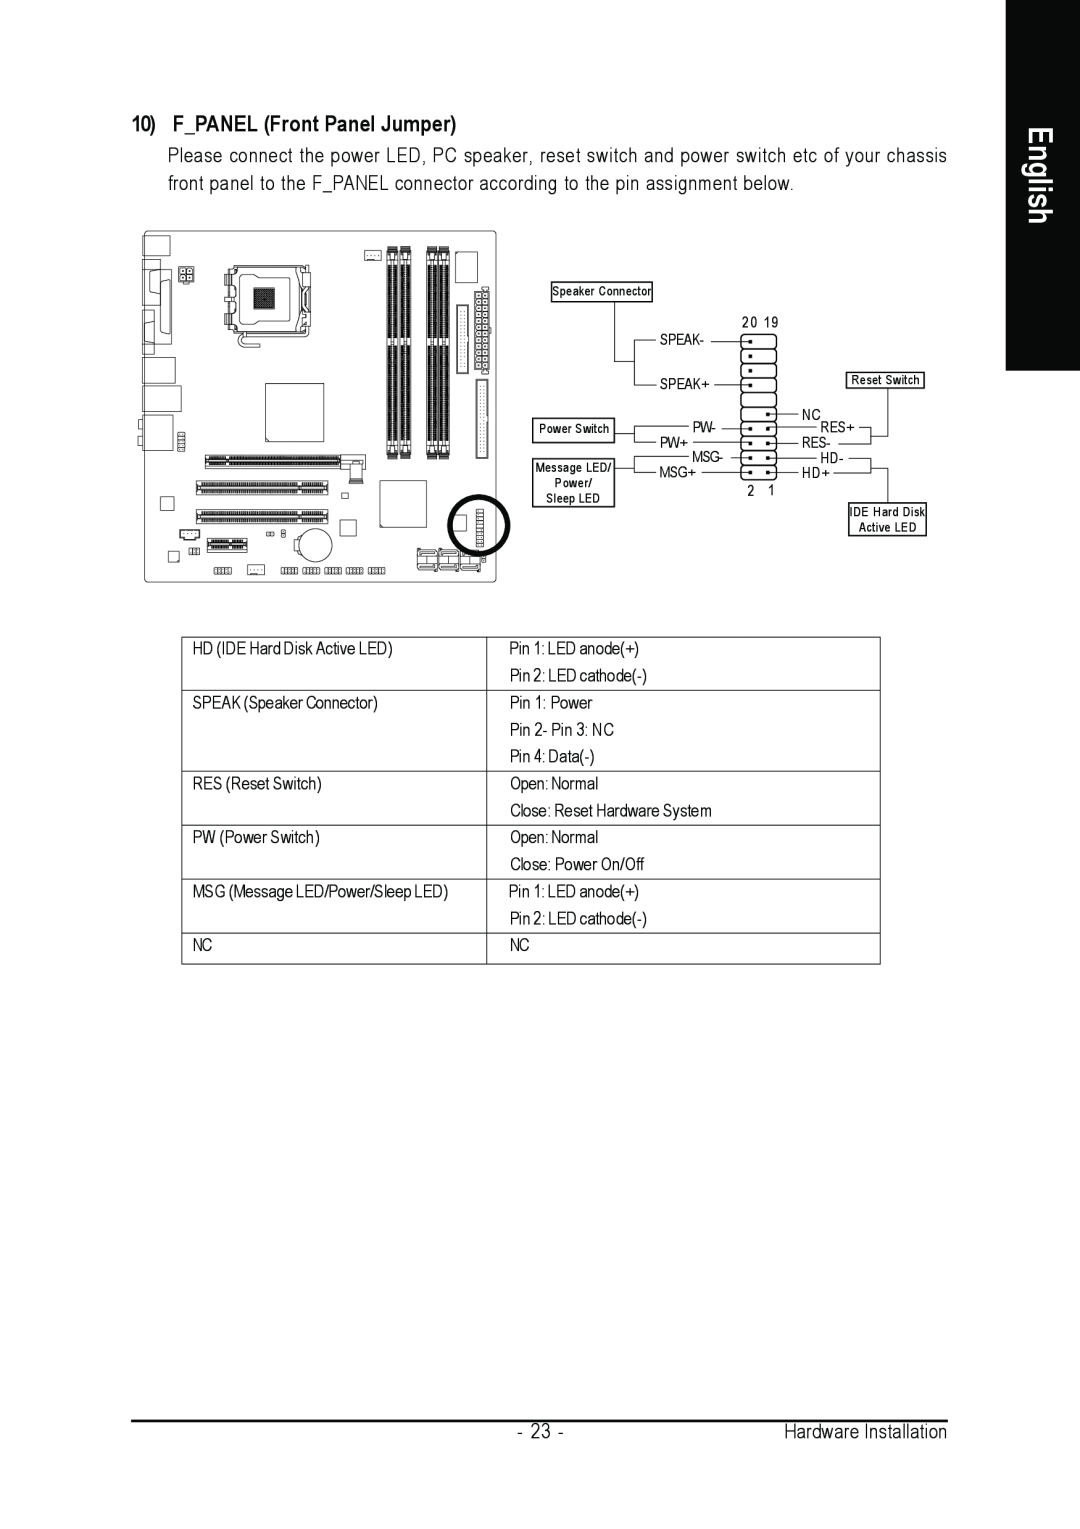 Gigabyte GA-965GM-S2, GA-965GM-DS2 user manual FPANEL Front Panel Jumper, English, Speaker Connector, Power Sleep LED 